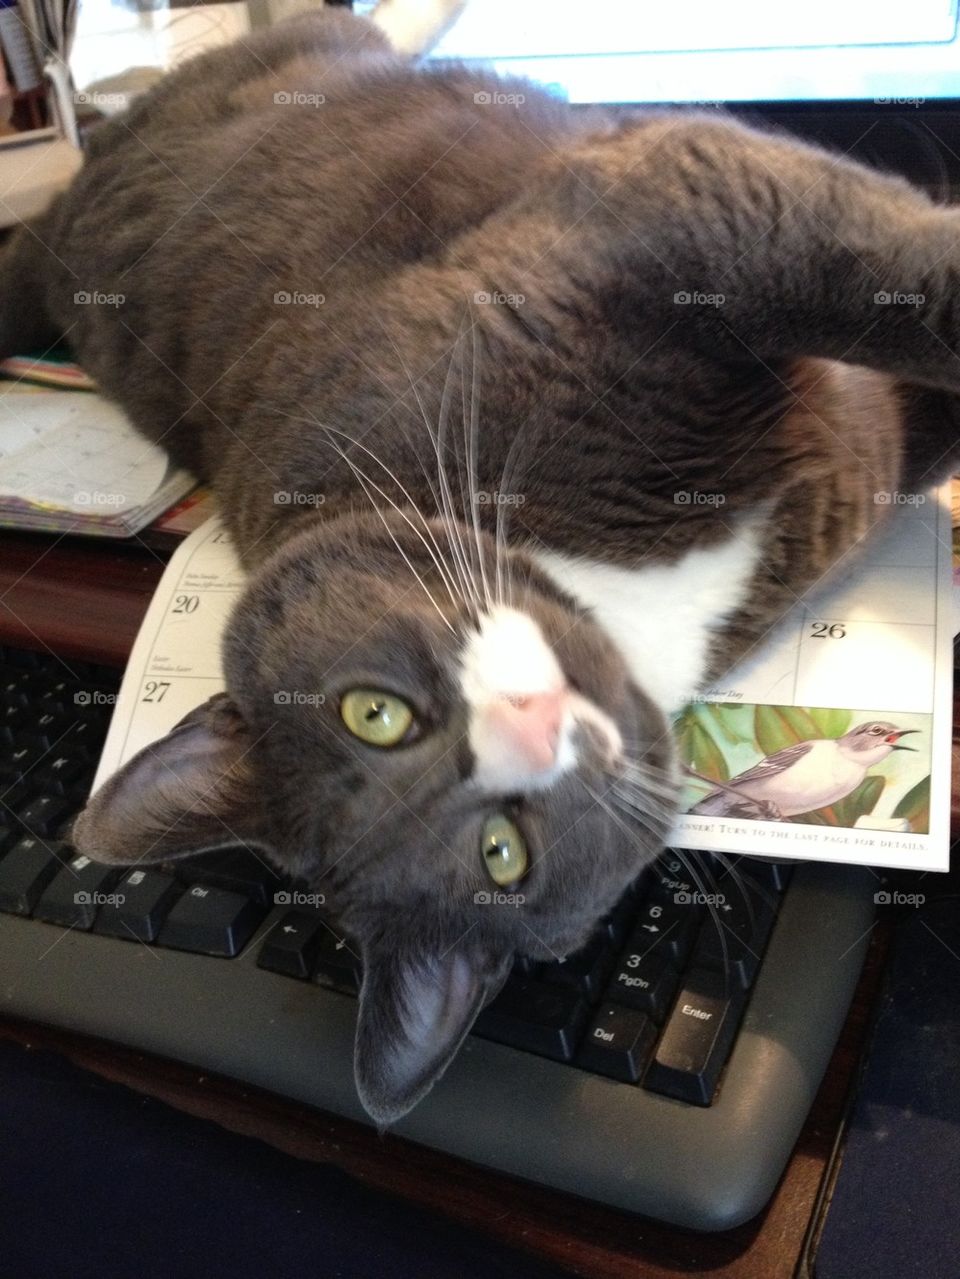 Kitty on keyboard